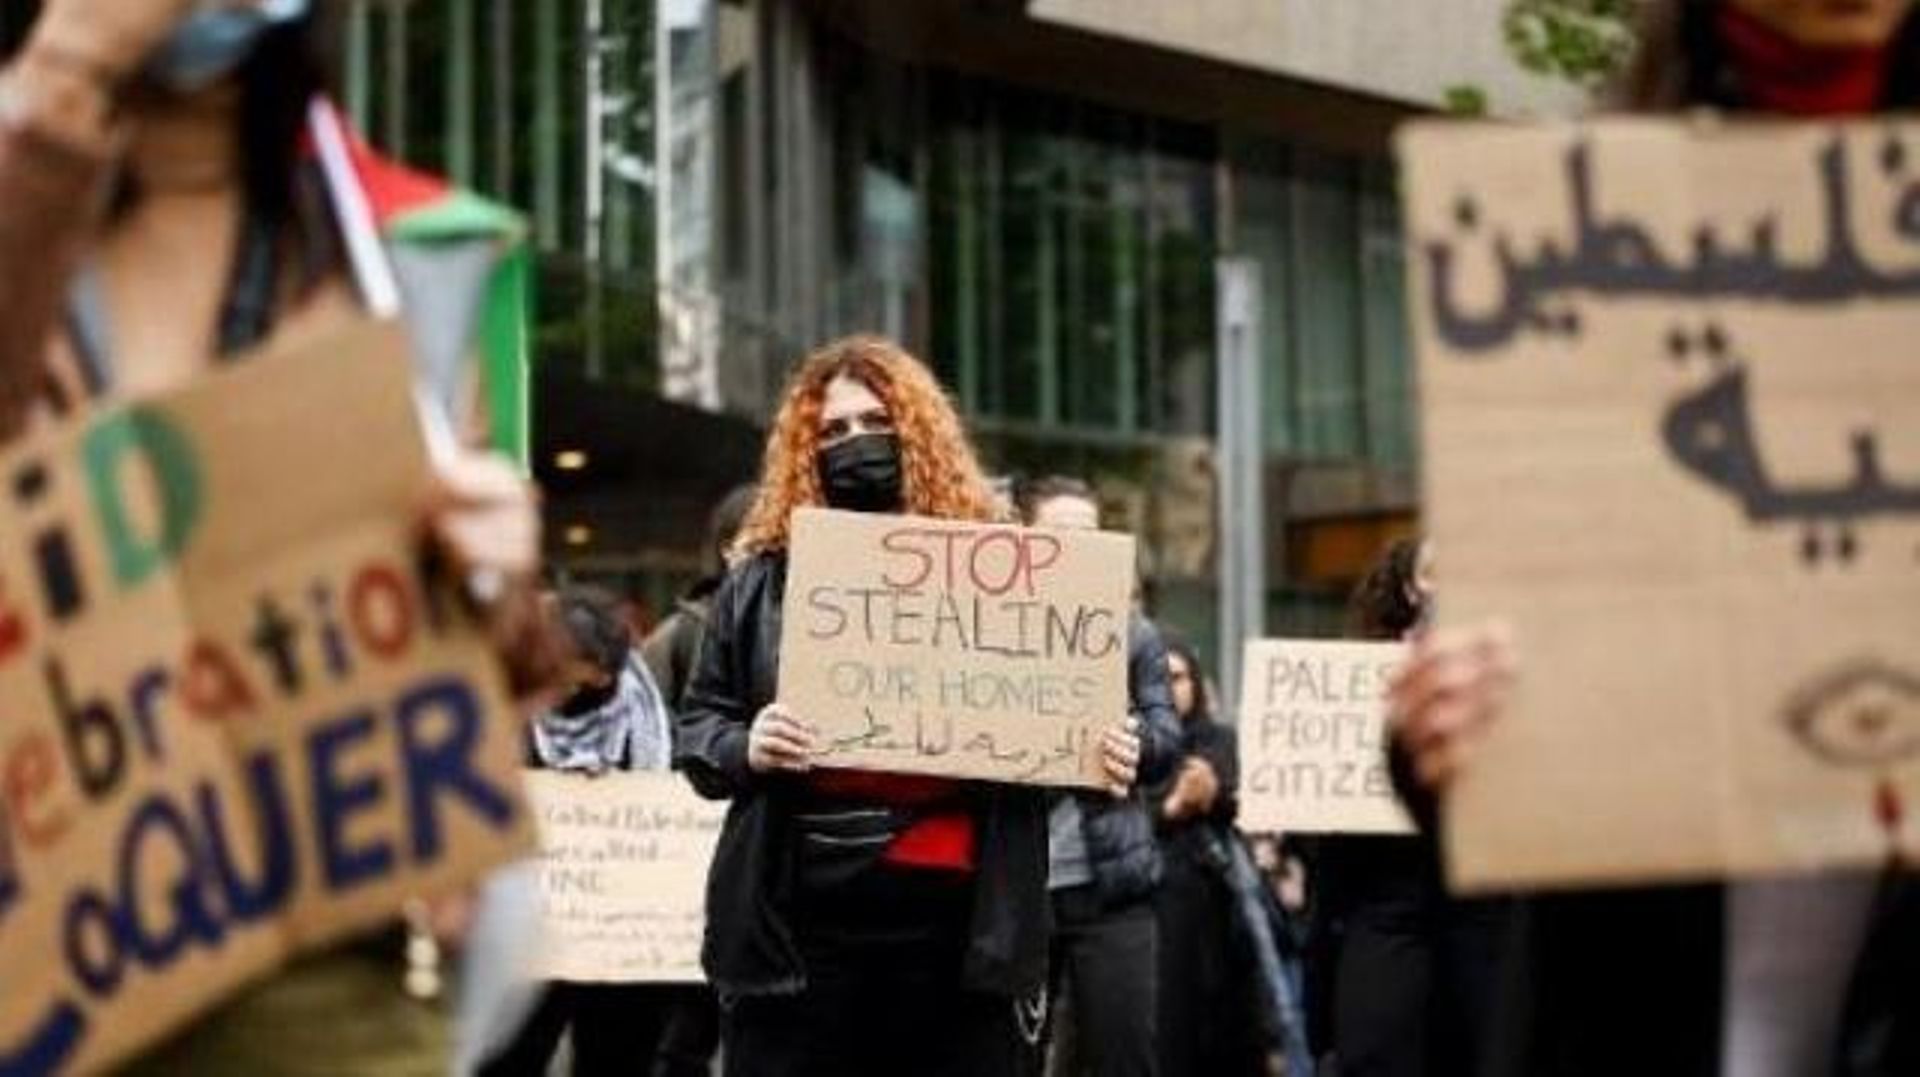 Environ 3.000 personnes manifestent à Bruxelles en soutien aux Palestiniens